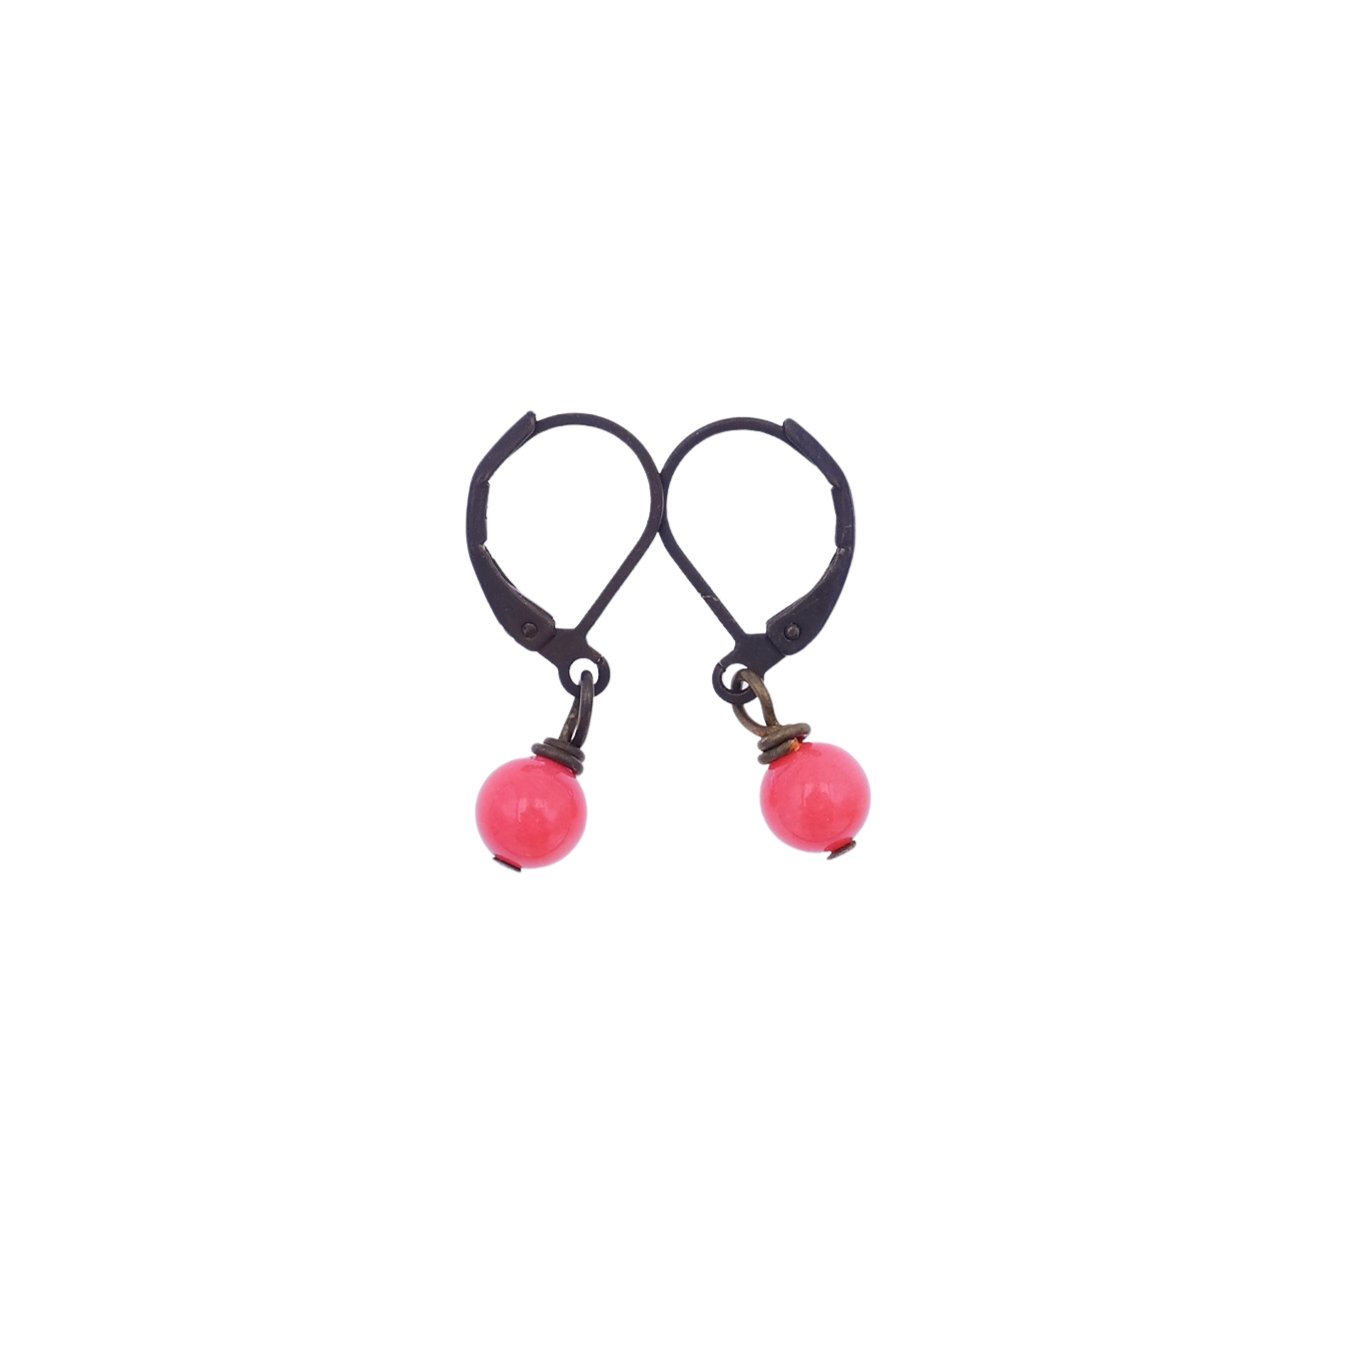 Pink Coral Earrings - Gypsy Soul Jewellery